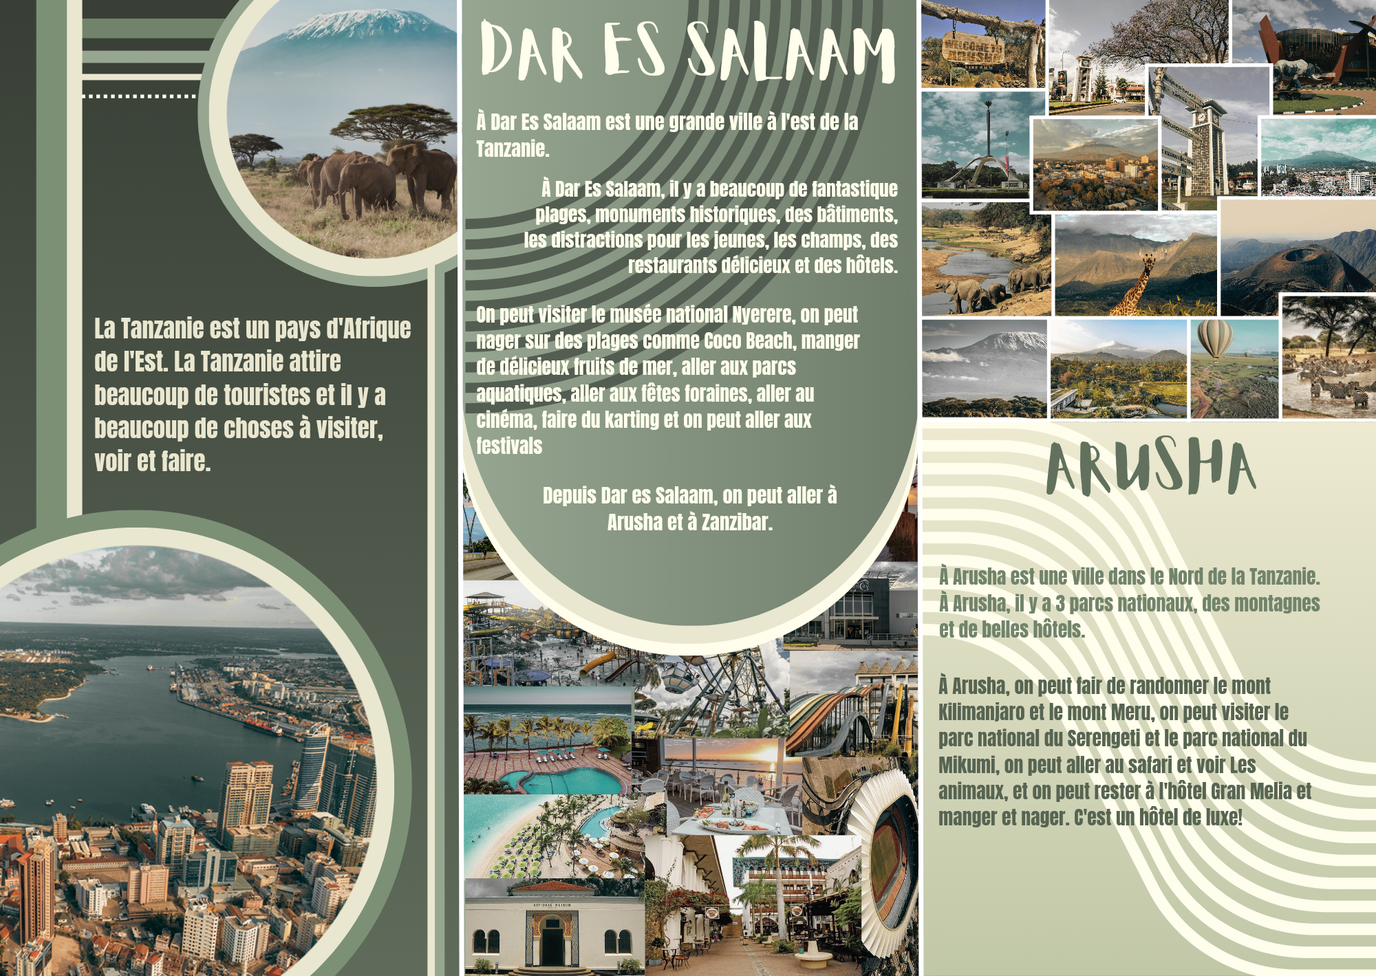 Dar es Salaam tourist information.png